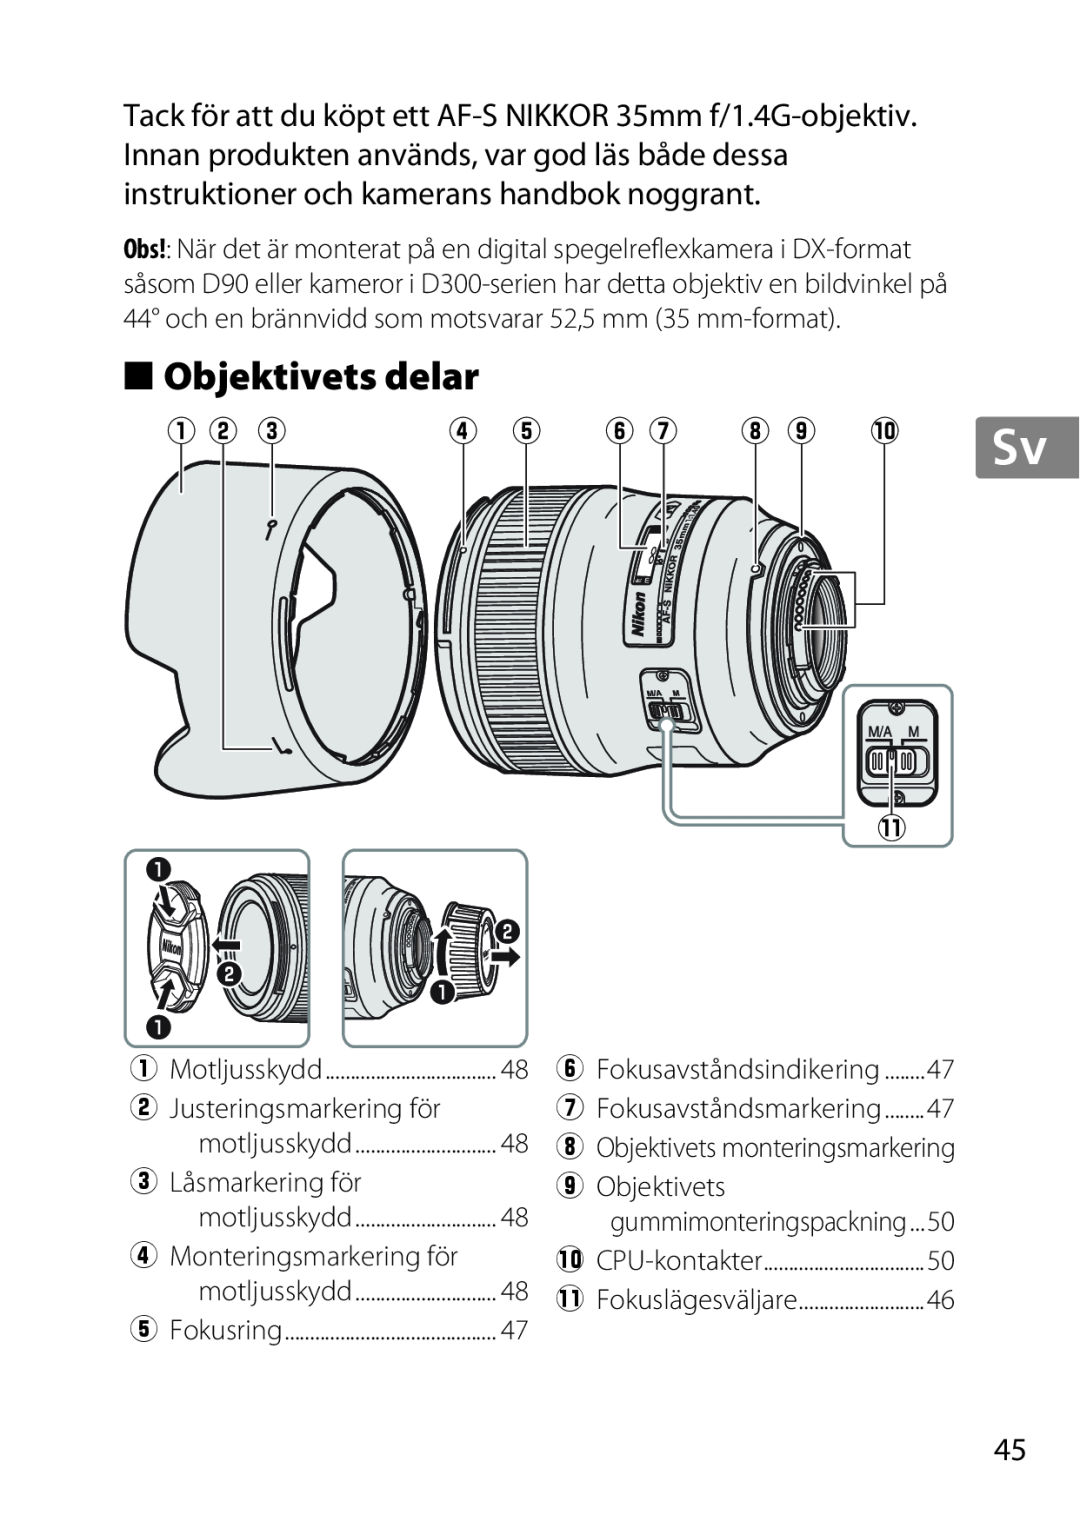 Nikon 35mmf14G, AF-S, 35mm f/1.4G, 2198 user manual Objektivets delar, q w e, r t y u i o !0 